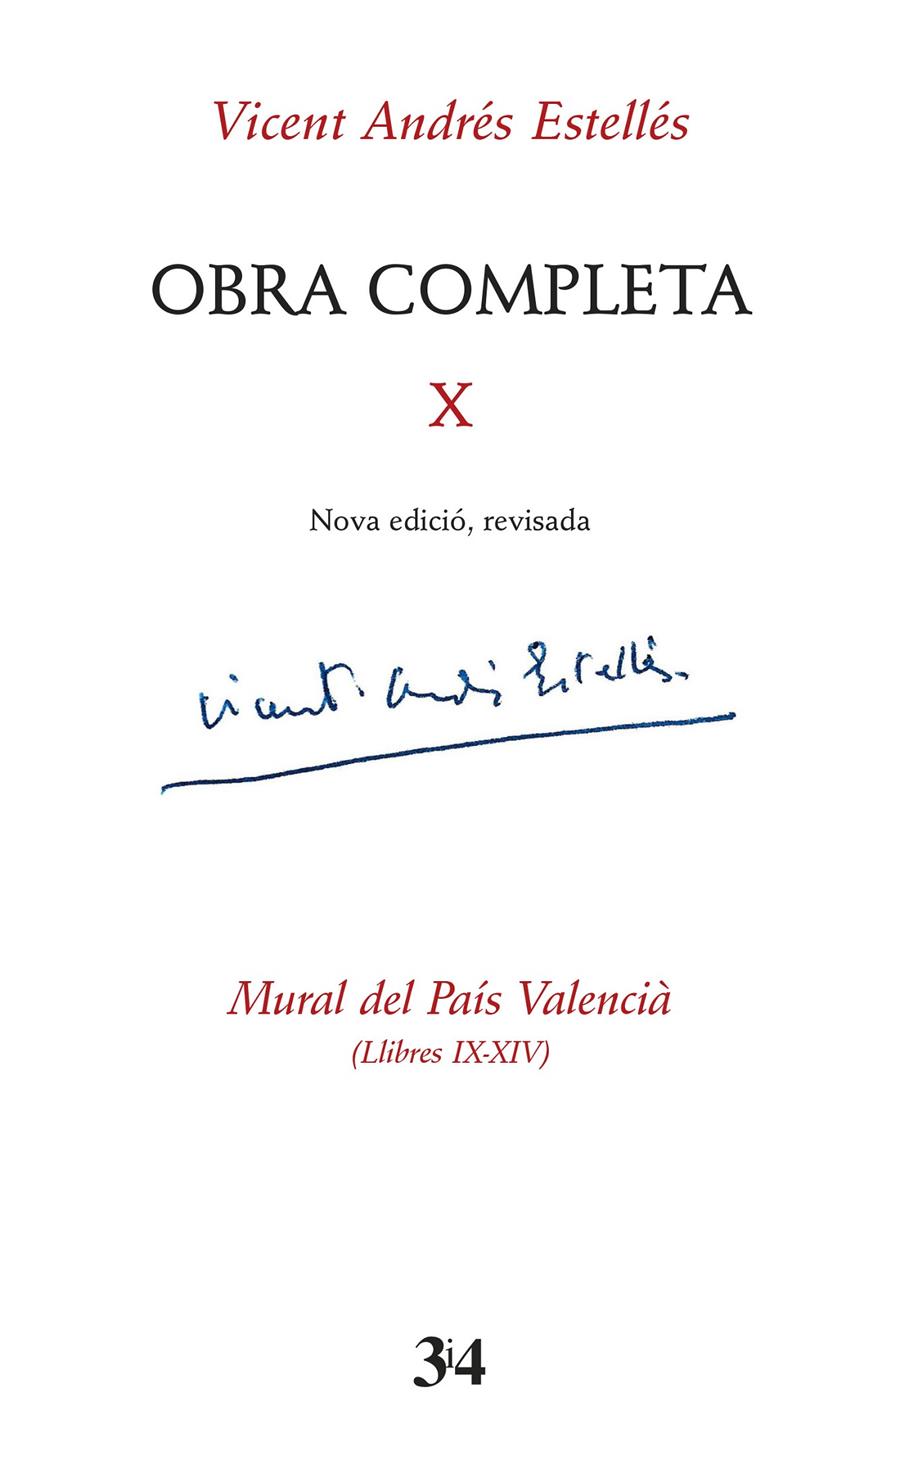 Obra completa revisada, volum 10 | Andrés Estellés, Vicent | Cooperativa autogestionària